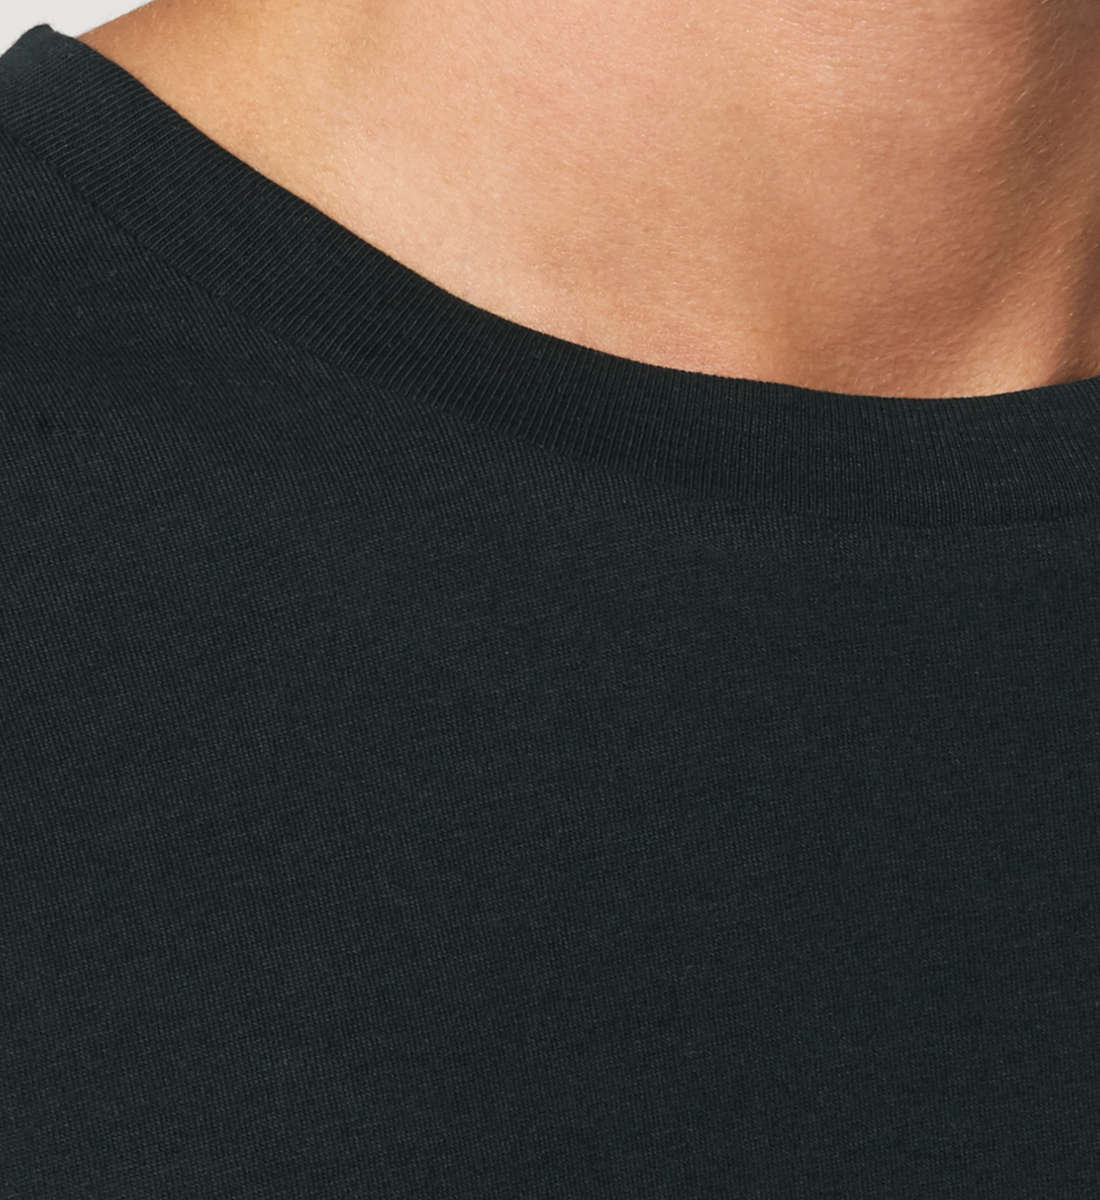 Schwarzes T-Shirt Unisex Relaxed Fit für Frauen und Männer bedruckt mit dem Design der Roger Rockawoo Kollektion Mountainbike doomed to pedal